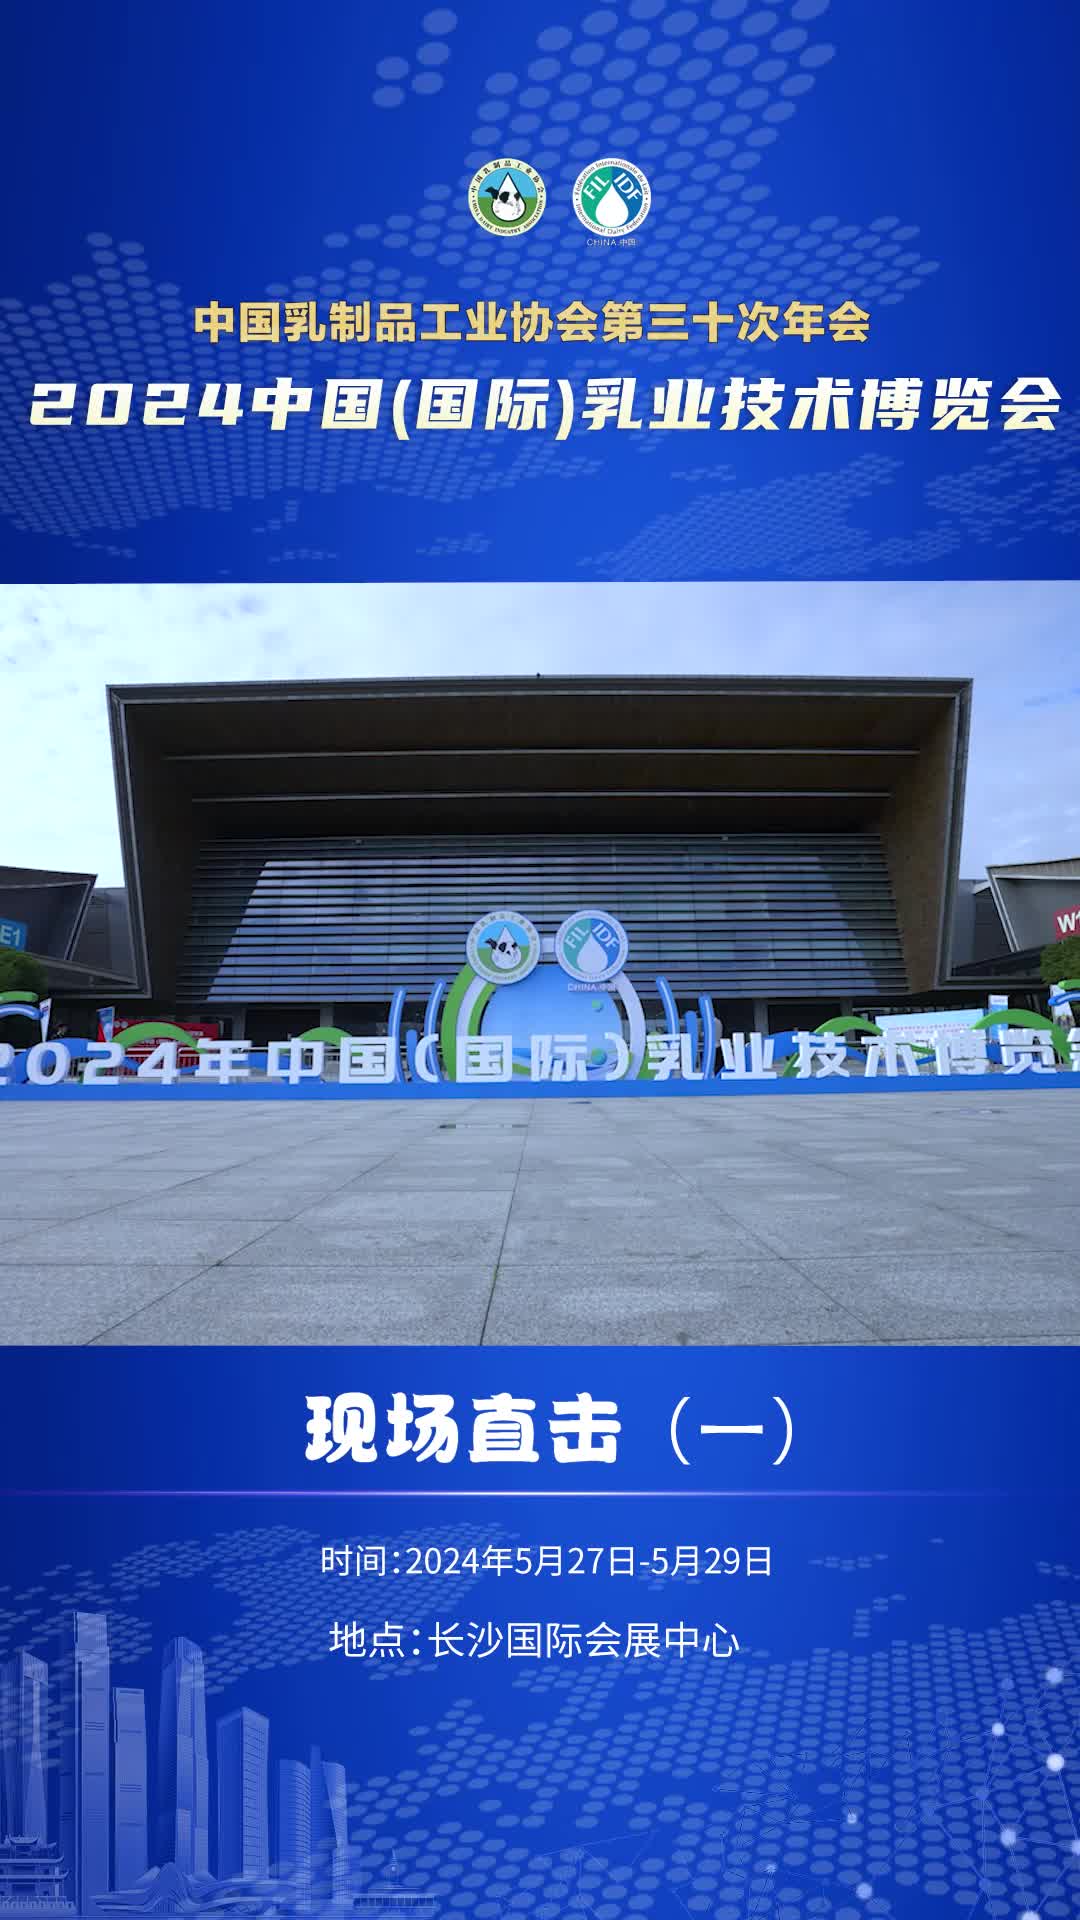 中国乳制品工业协会第三十次年会暨2024年中国(国际) 乳业技术博览会举办